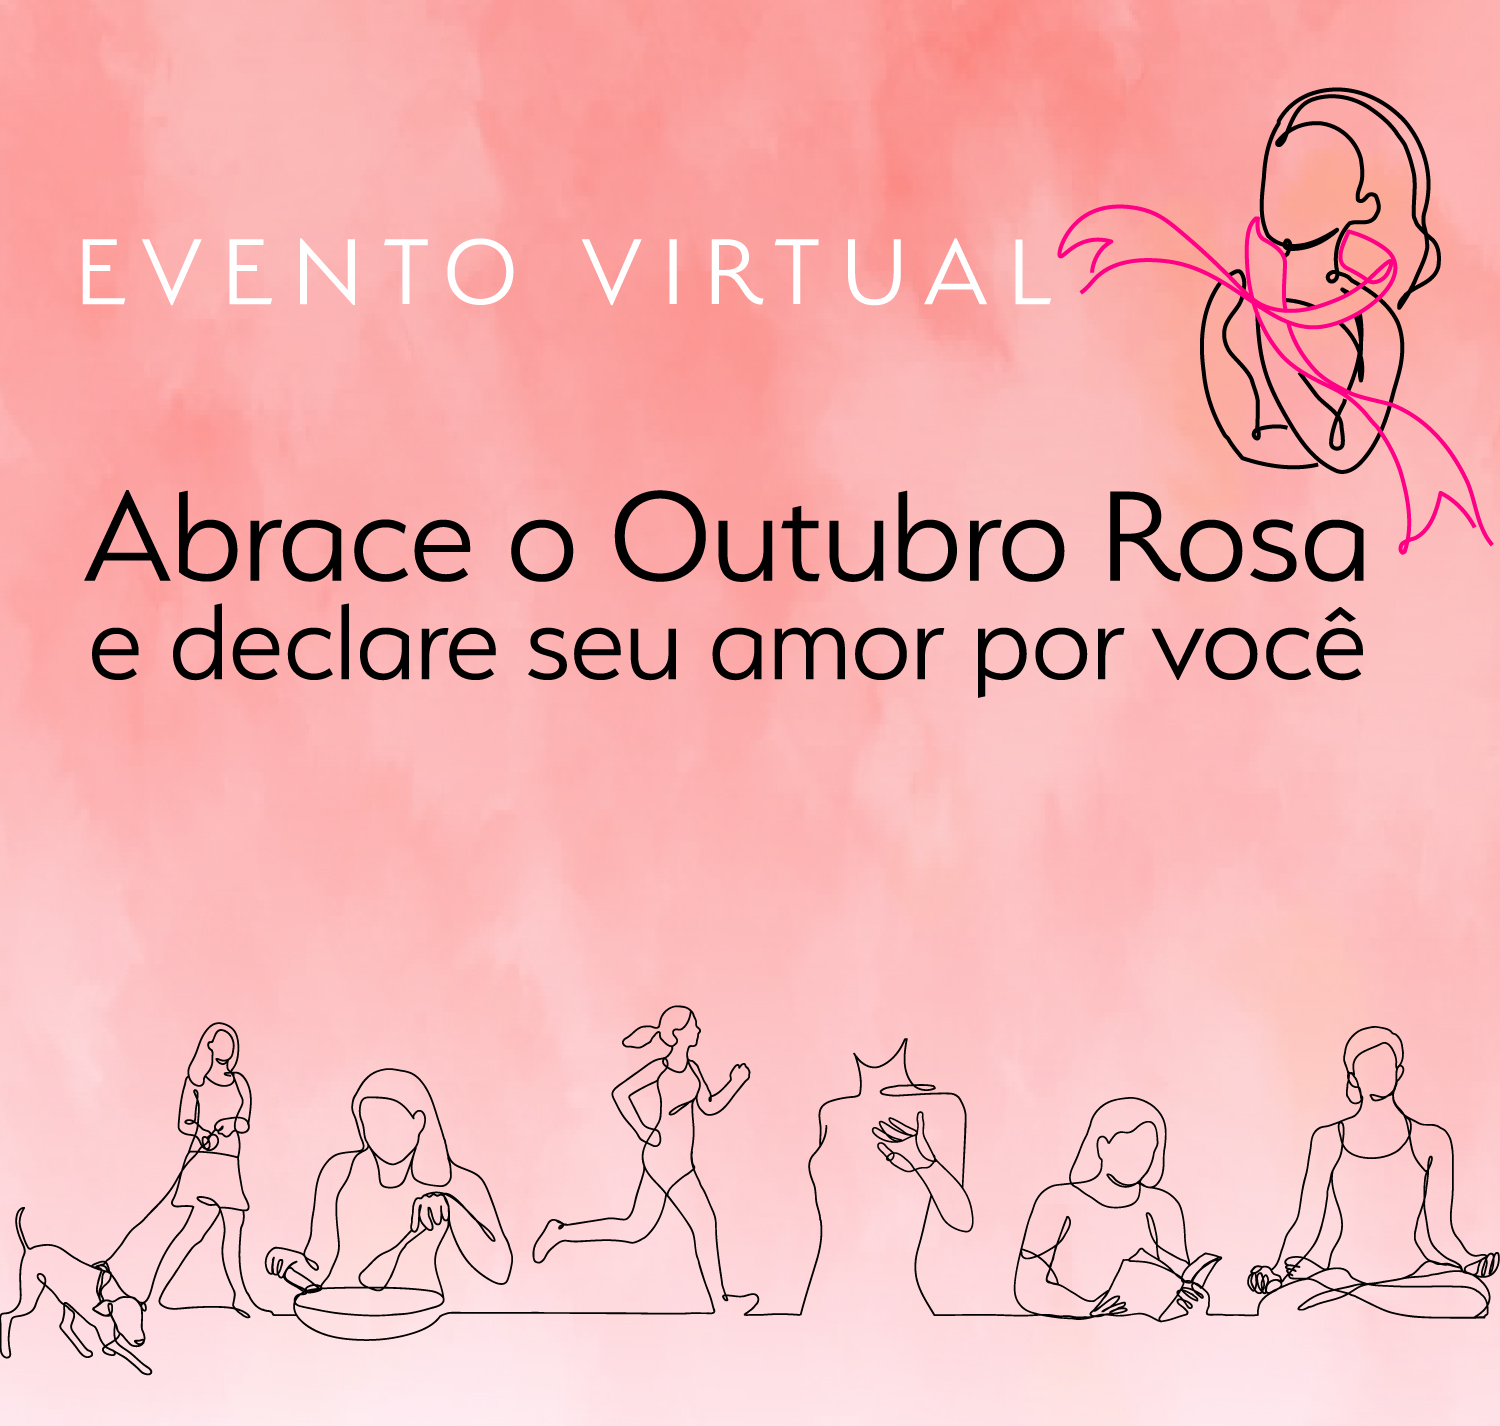 INSTITUCIONAL: Outubro Rosa: TRF1 vai promover encontro em homenagem ao mês do autocuidado da mulher